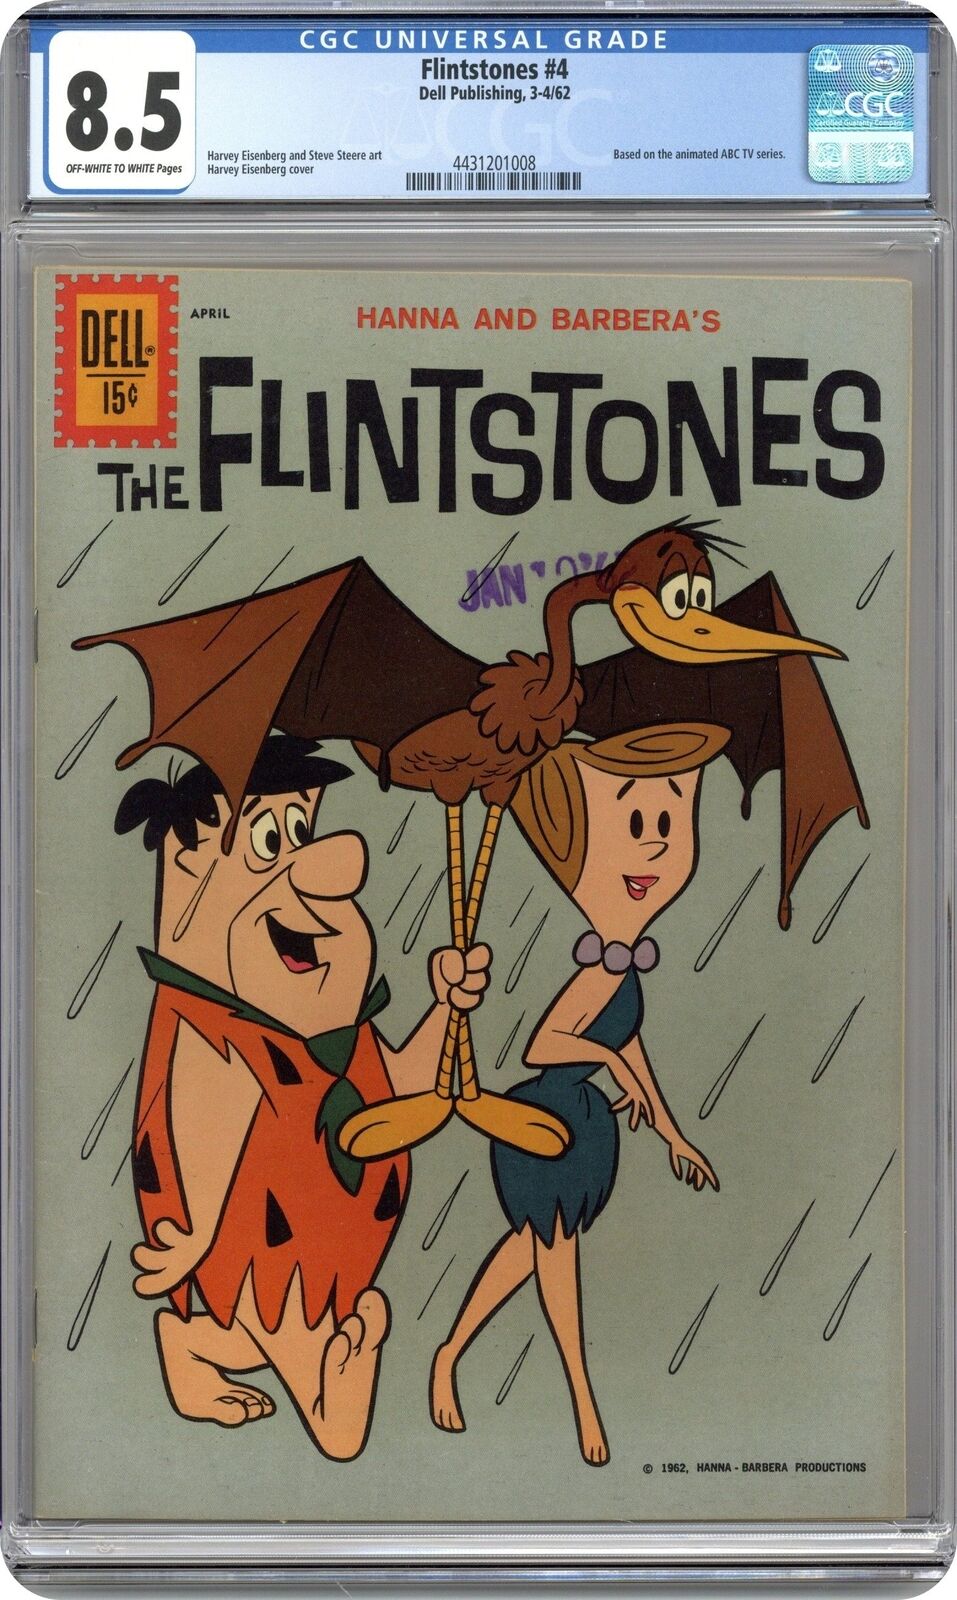 Flintstones #4 CGC 8.5 1962 4431201008